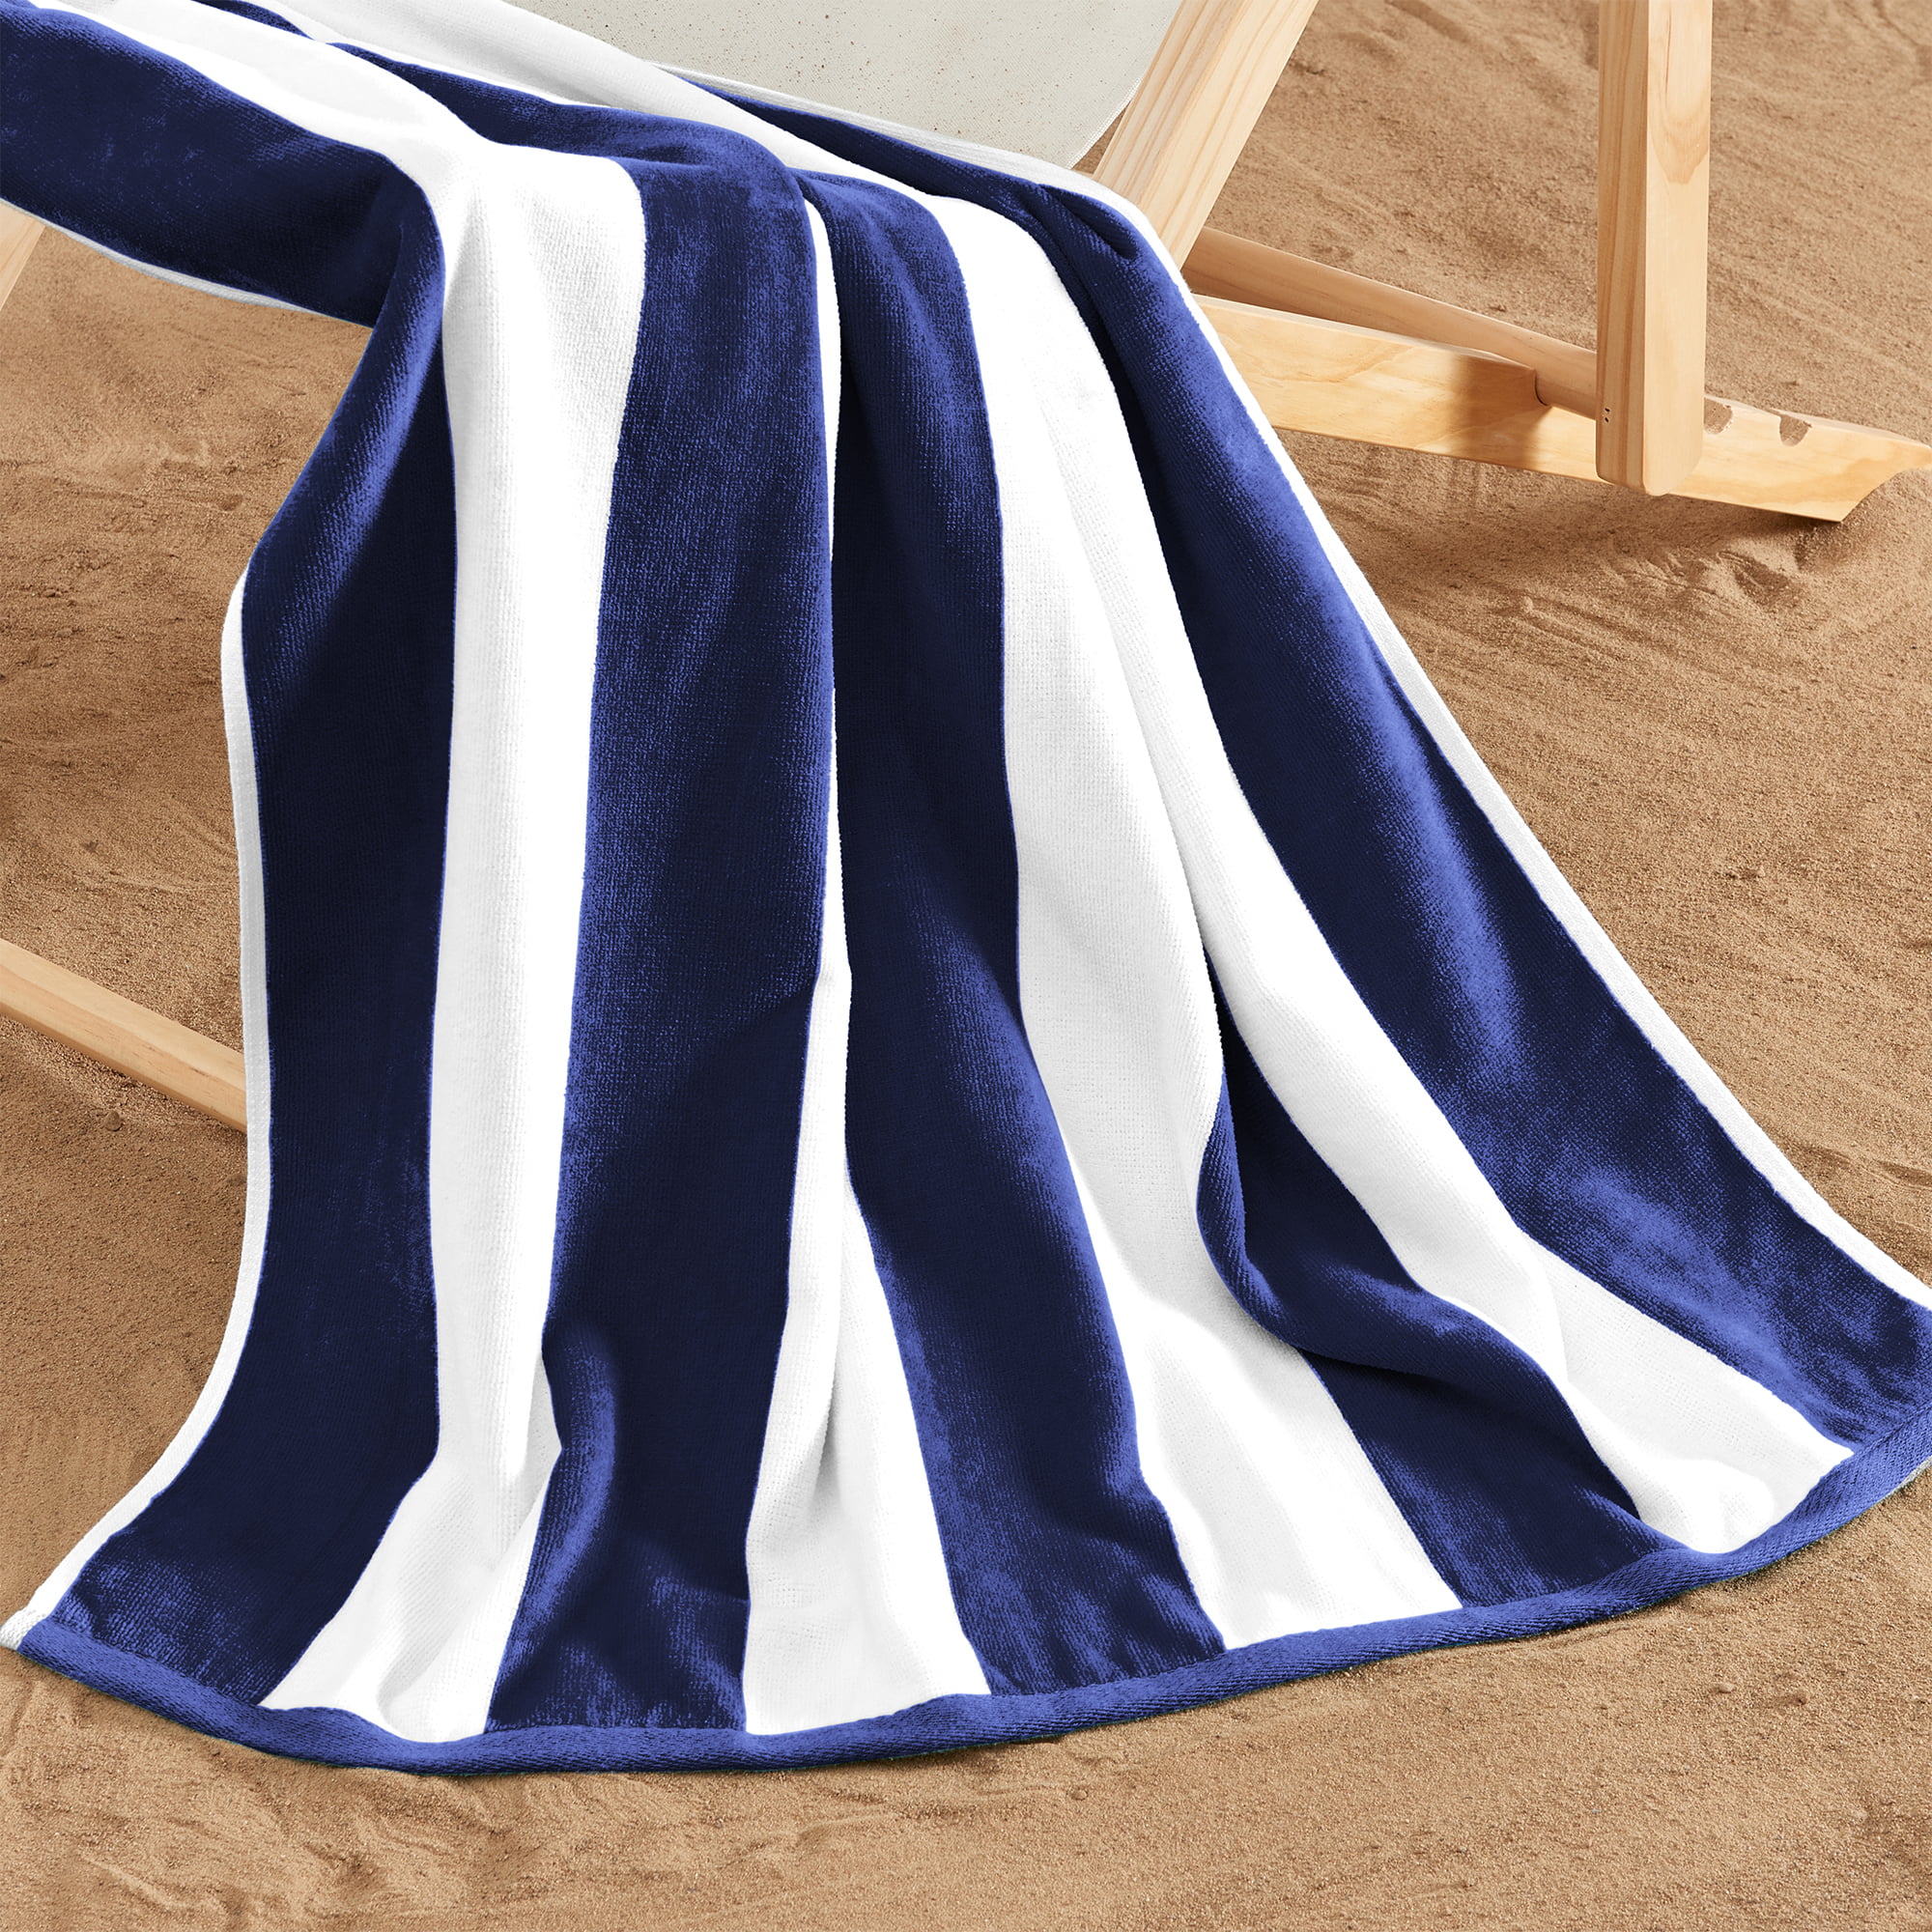 Cabana Stripe Whitsunday Navy Beach Towel - 2 sizes